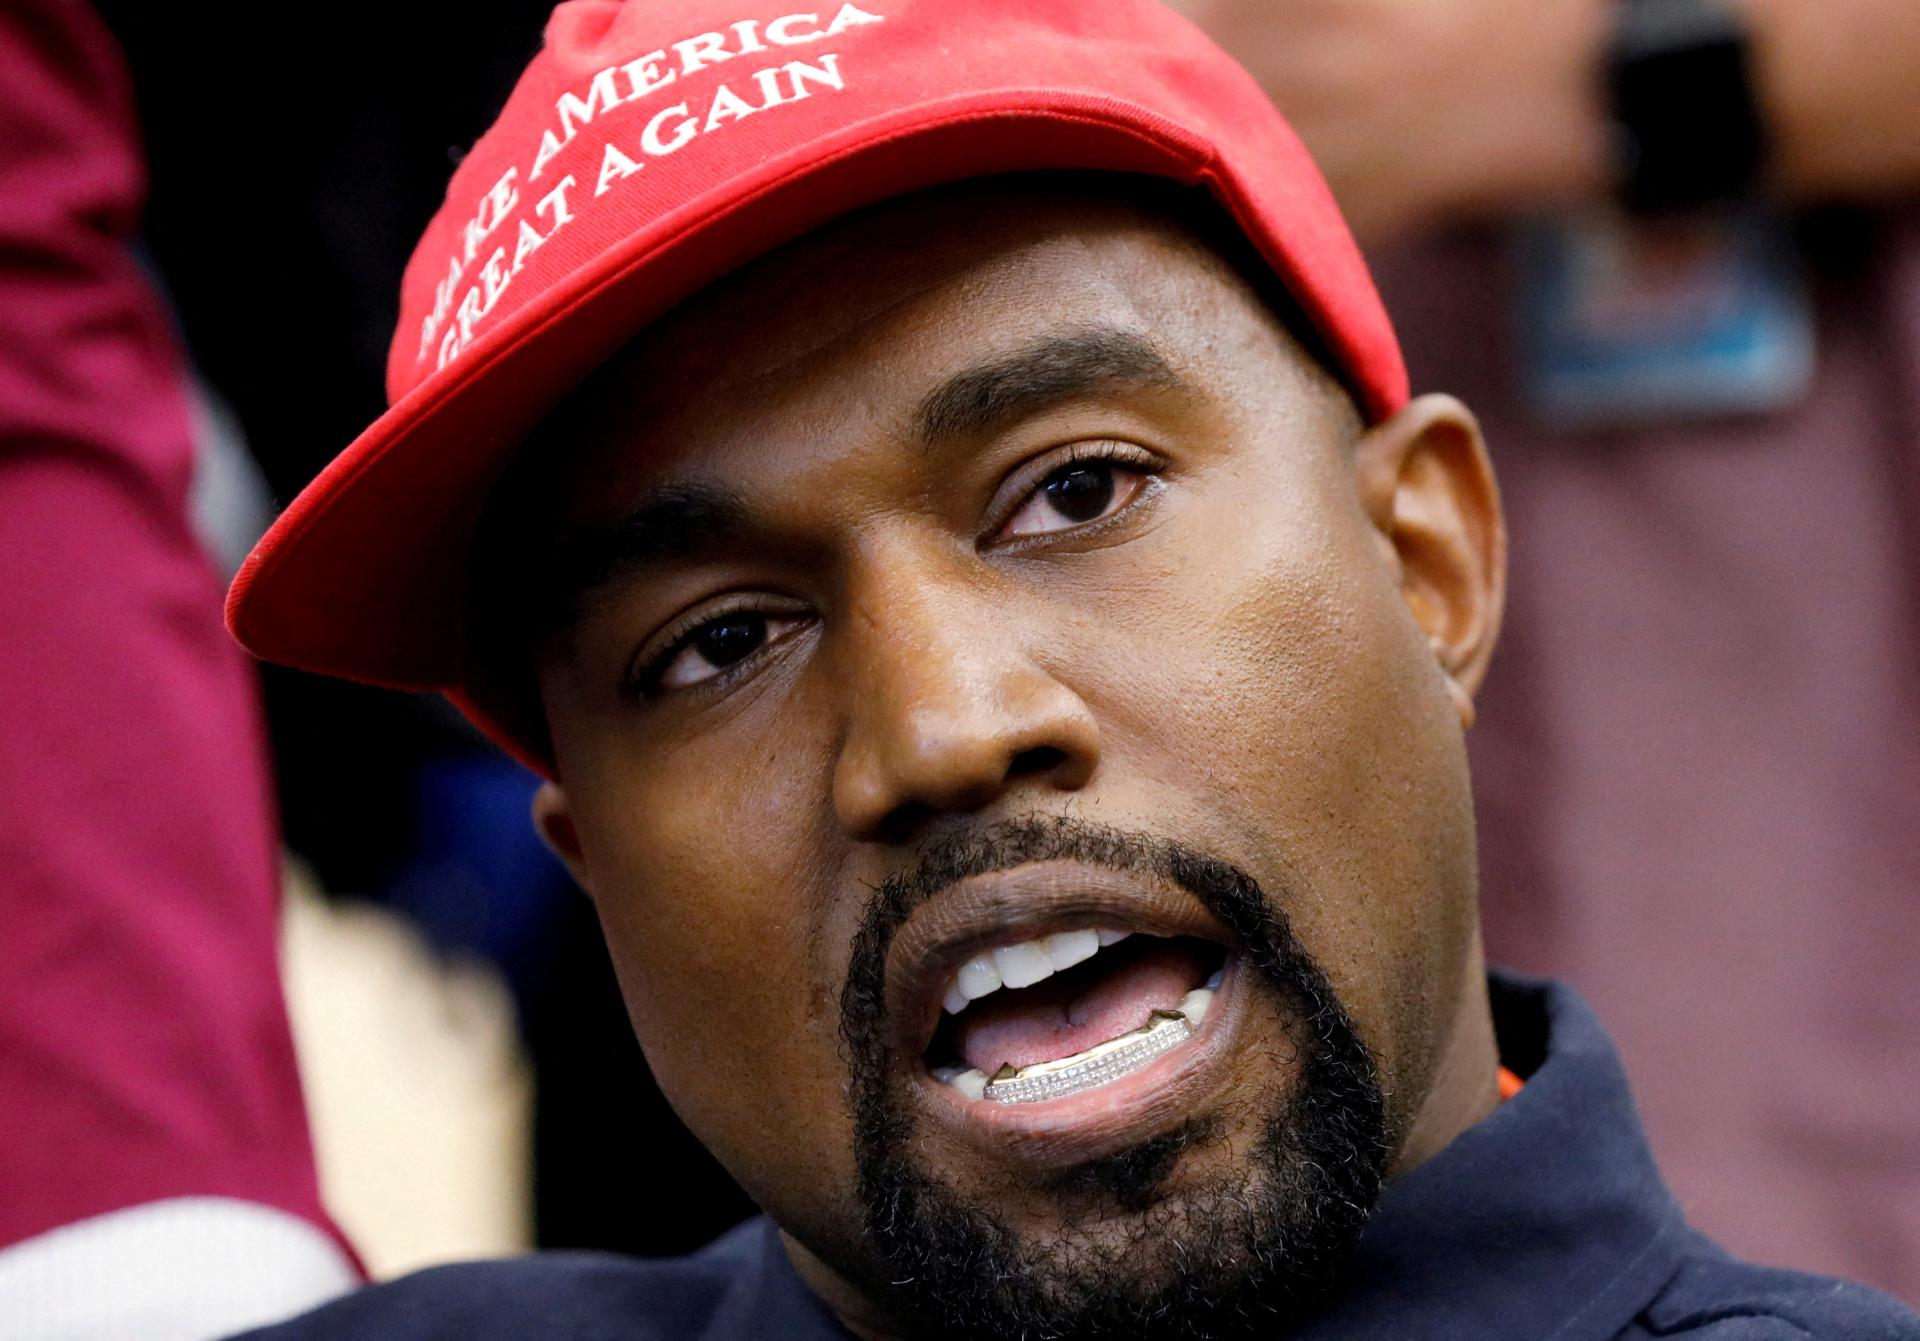 Kanye West ohlásil prezidentskú kandidatúru, stretol sa s Trumpom a nebojí sa prezentovať svoje názory